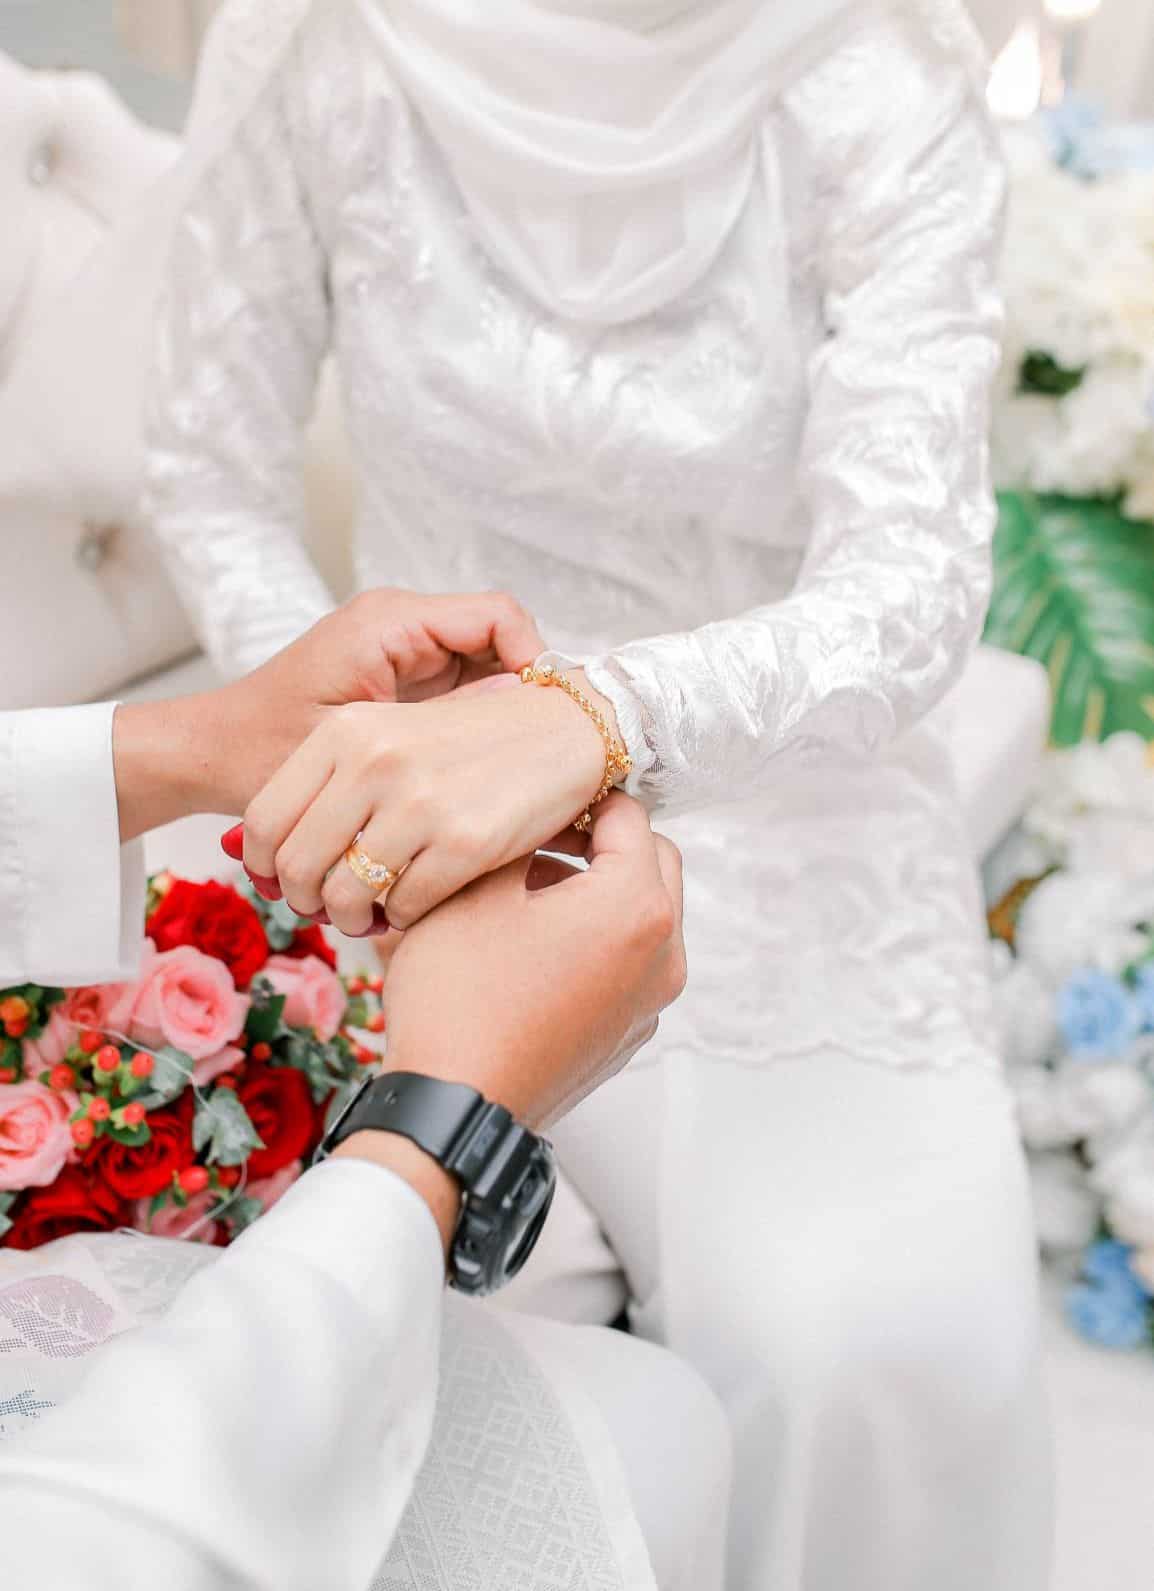 Baru 7 Hari Nikah, Suami Tinggalkan Rumah Tanpa Sebab & Lafaz Talak Depan Kawan 2